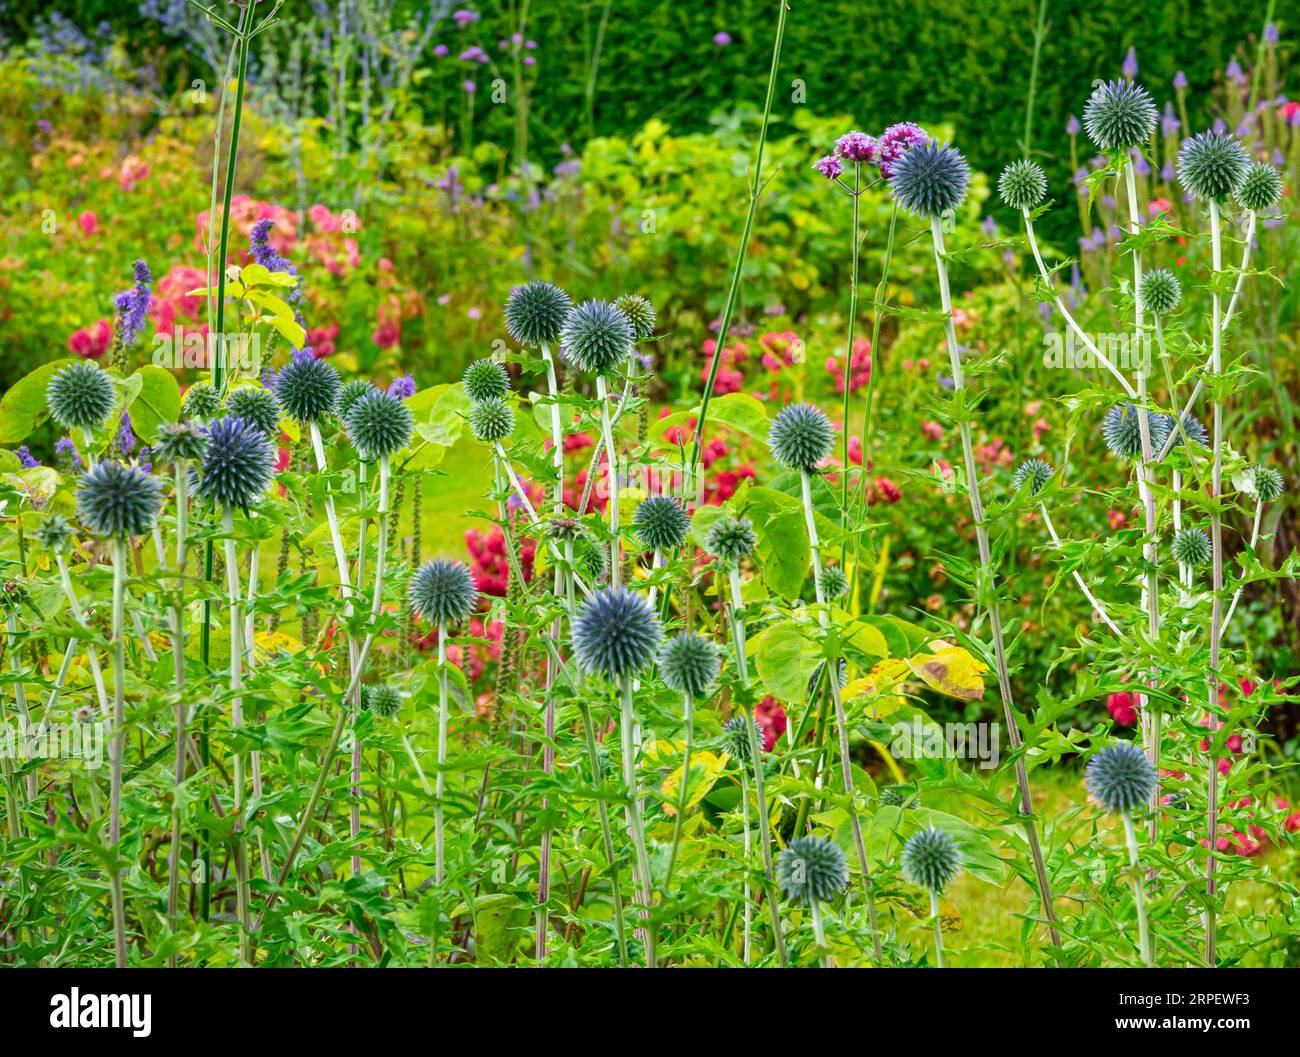 Fleurs d'été dans les bordures de jardin à How Hill House près de Ludham dans le Norfolk Broads National Park Angleterre Royaume-Uni. Banque D'Images